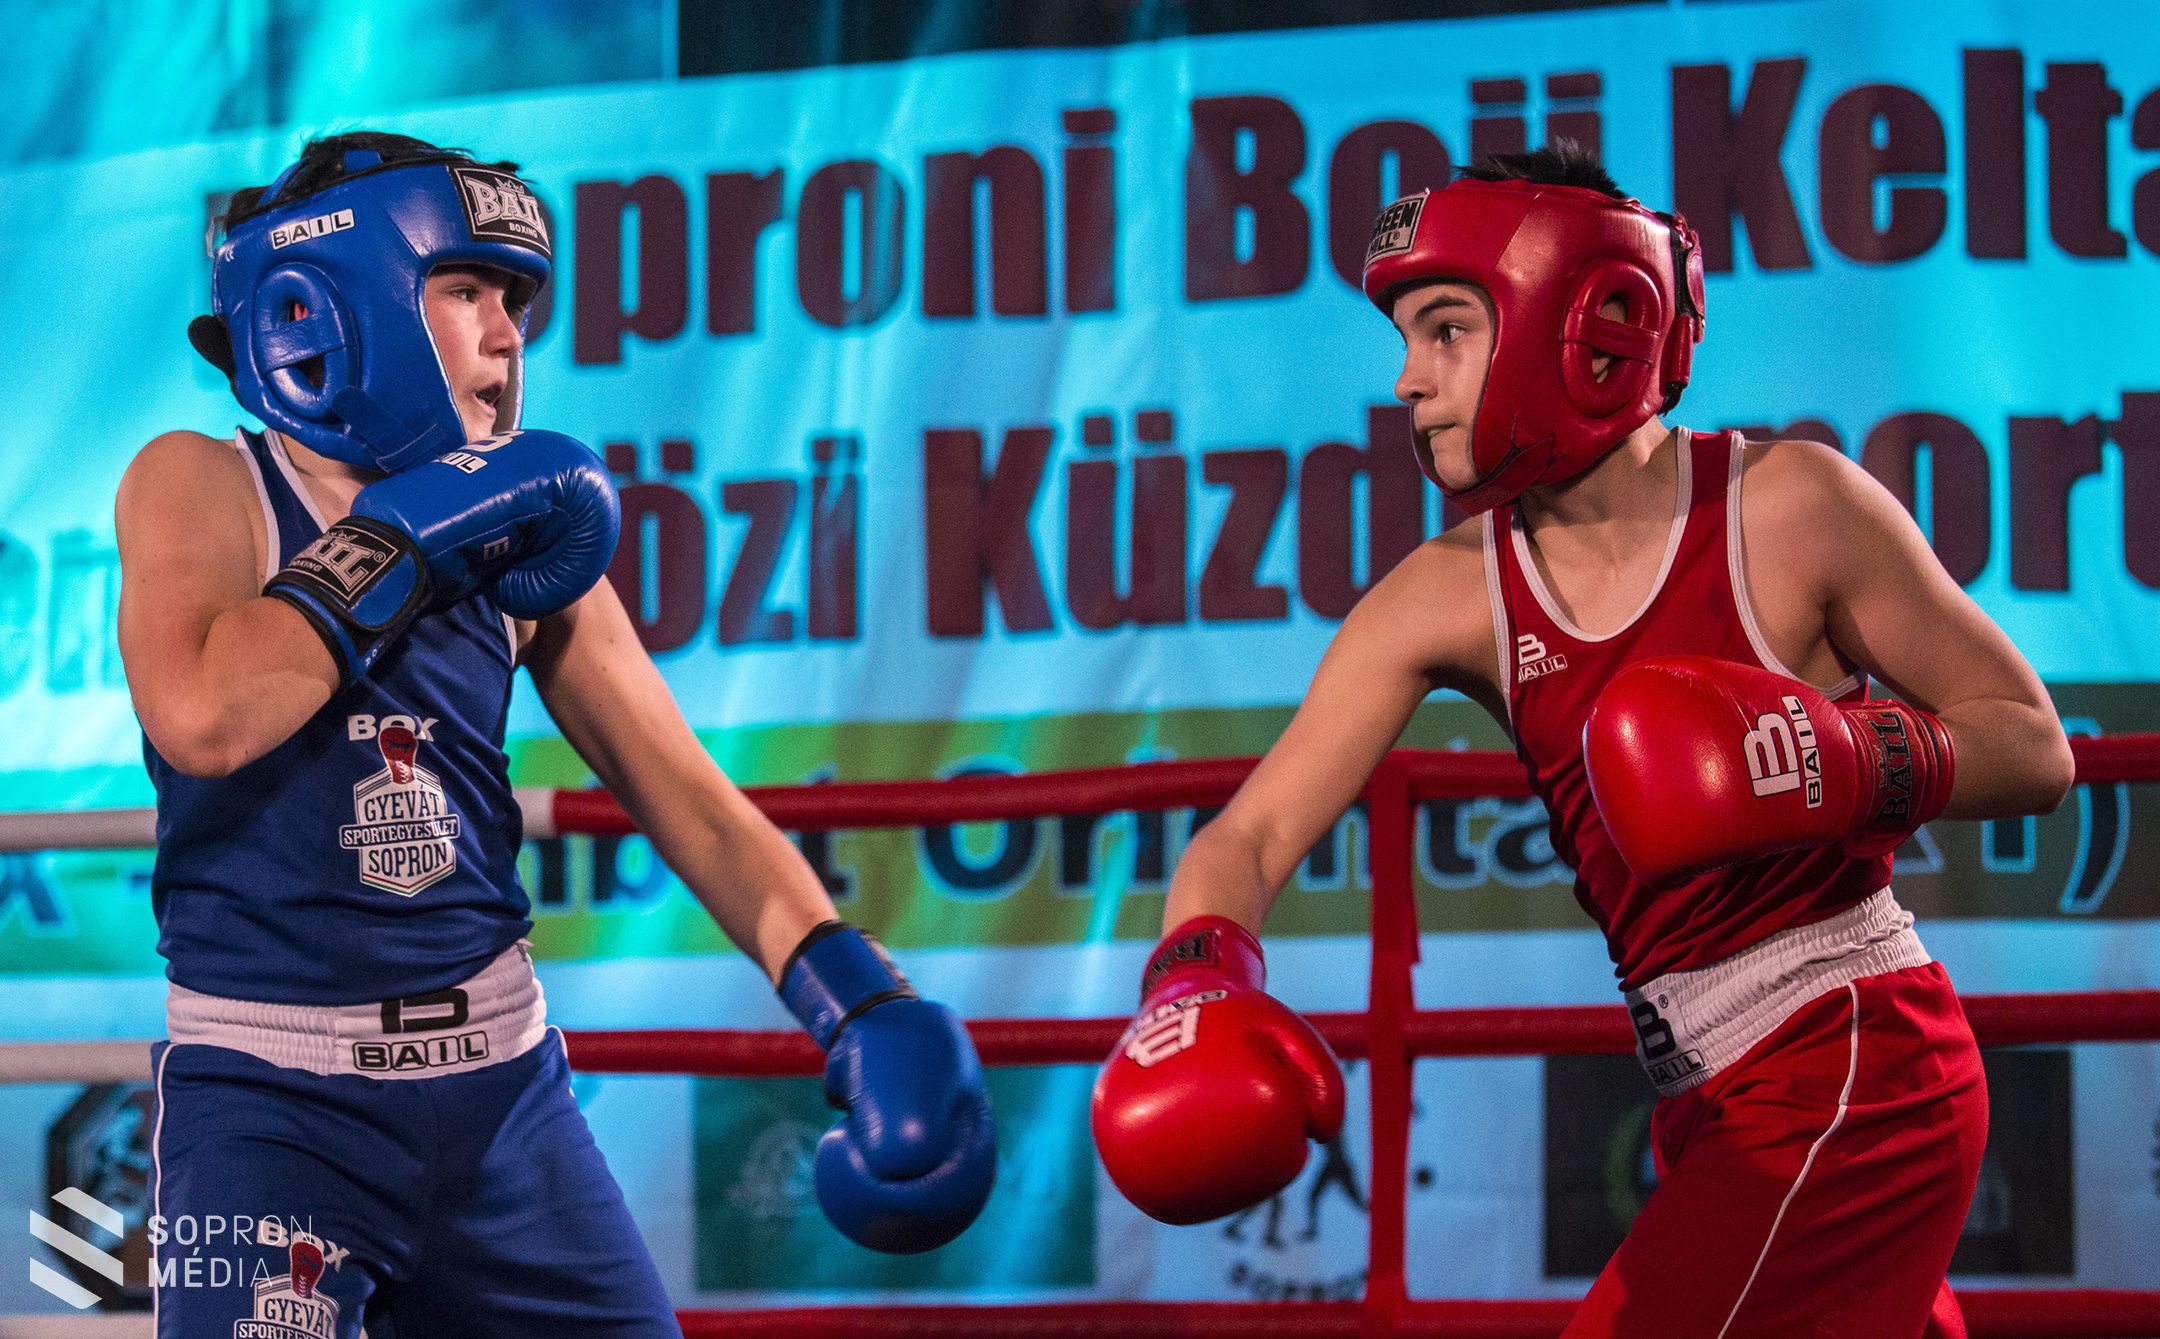 I. Soproni Boii Kelta Nemzetközi Küzdősport gála!